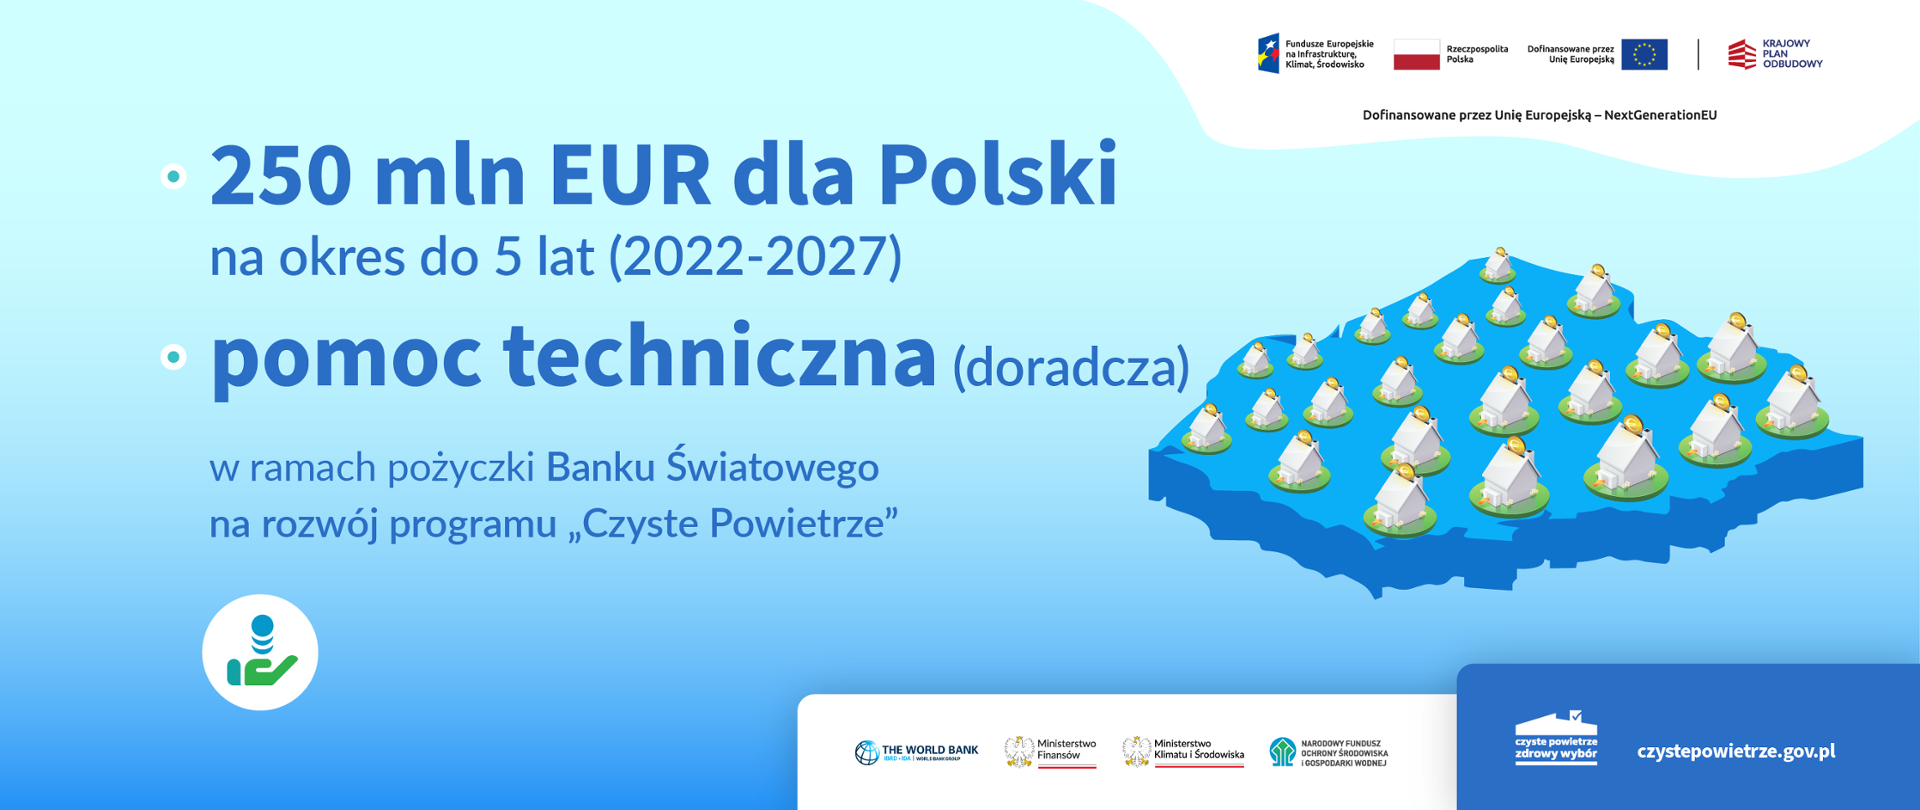 250 mln euro dla Polski na okres 5 lat (2022-2027) w ramach pożyczki Banku Światowego na rozwój programu "Czyste Powietrze"